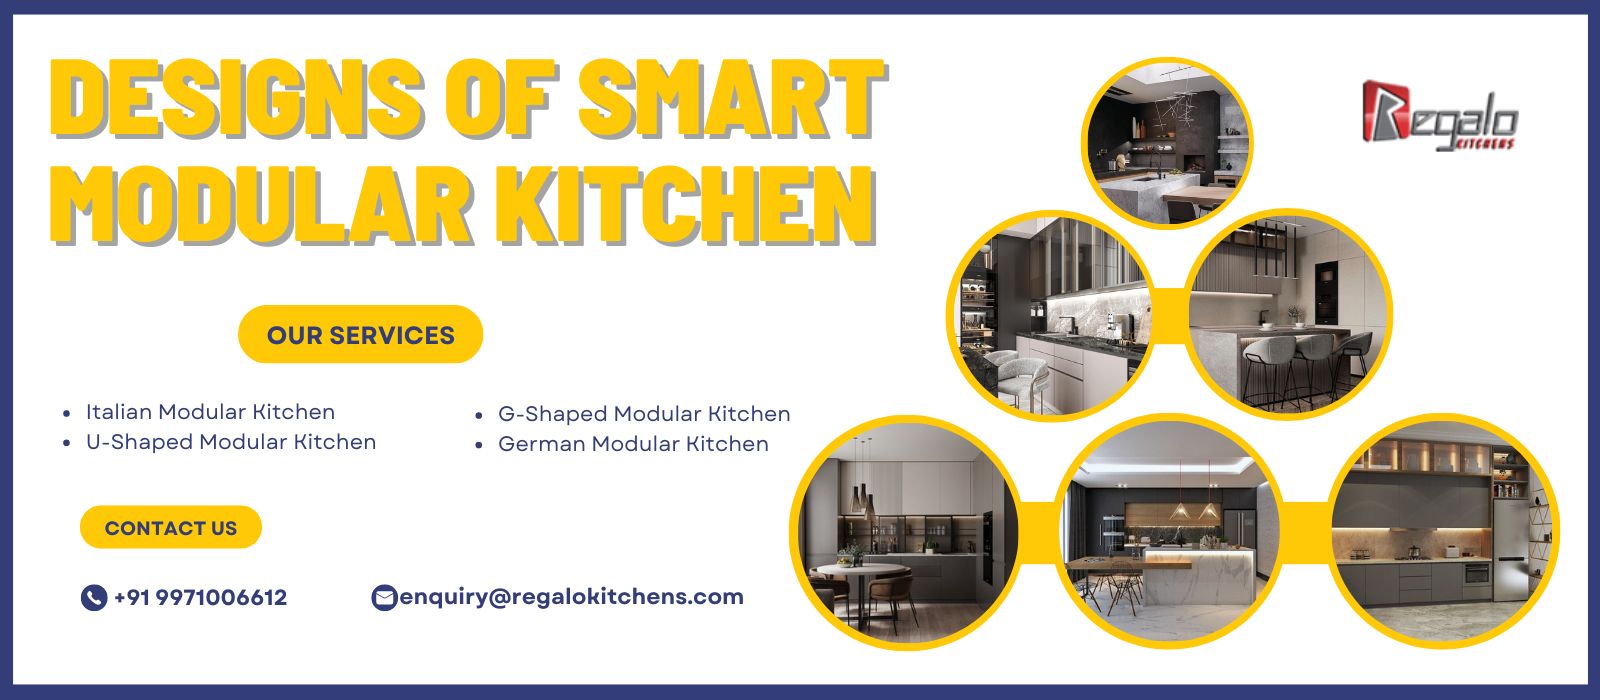 Designs of Smart Modular Kitchen